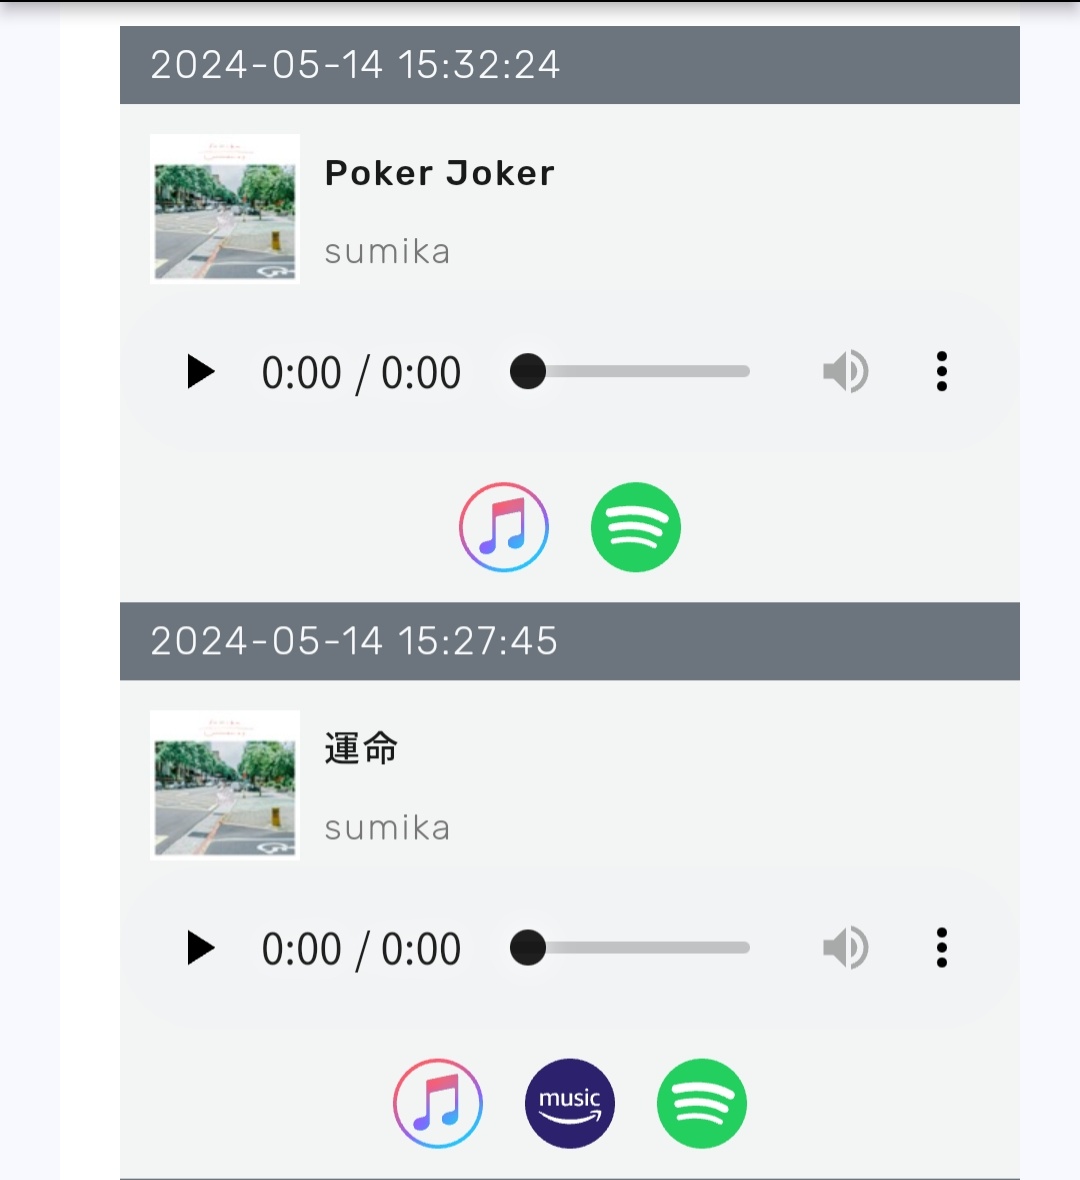 明日発売の2曲📻🎶 からの 片岡さんコメント流れた🙌 #802RM #どんなときもsumika